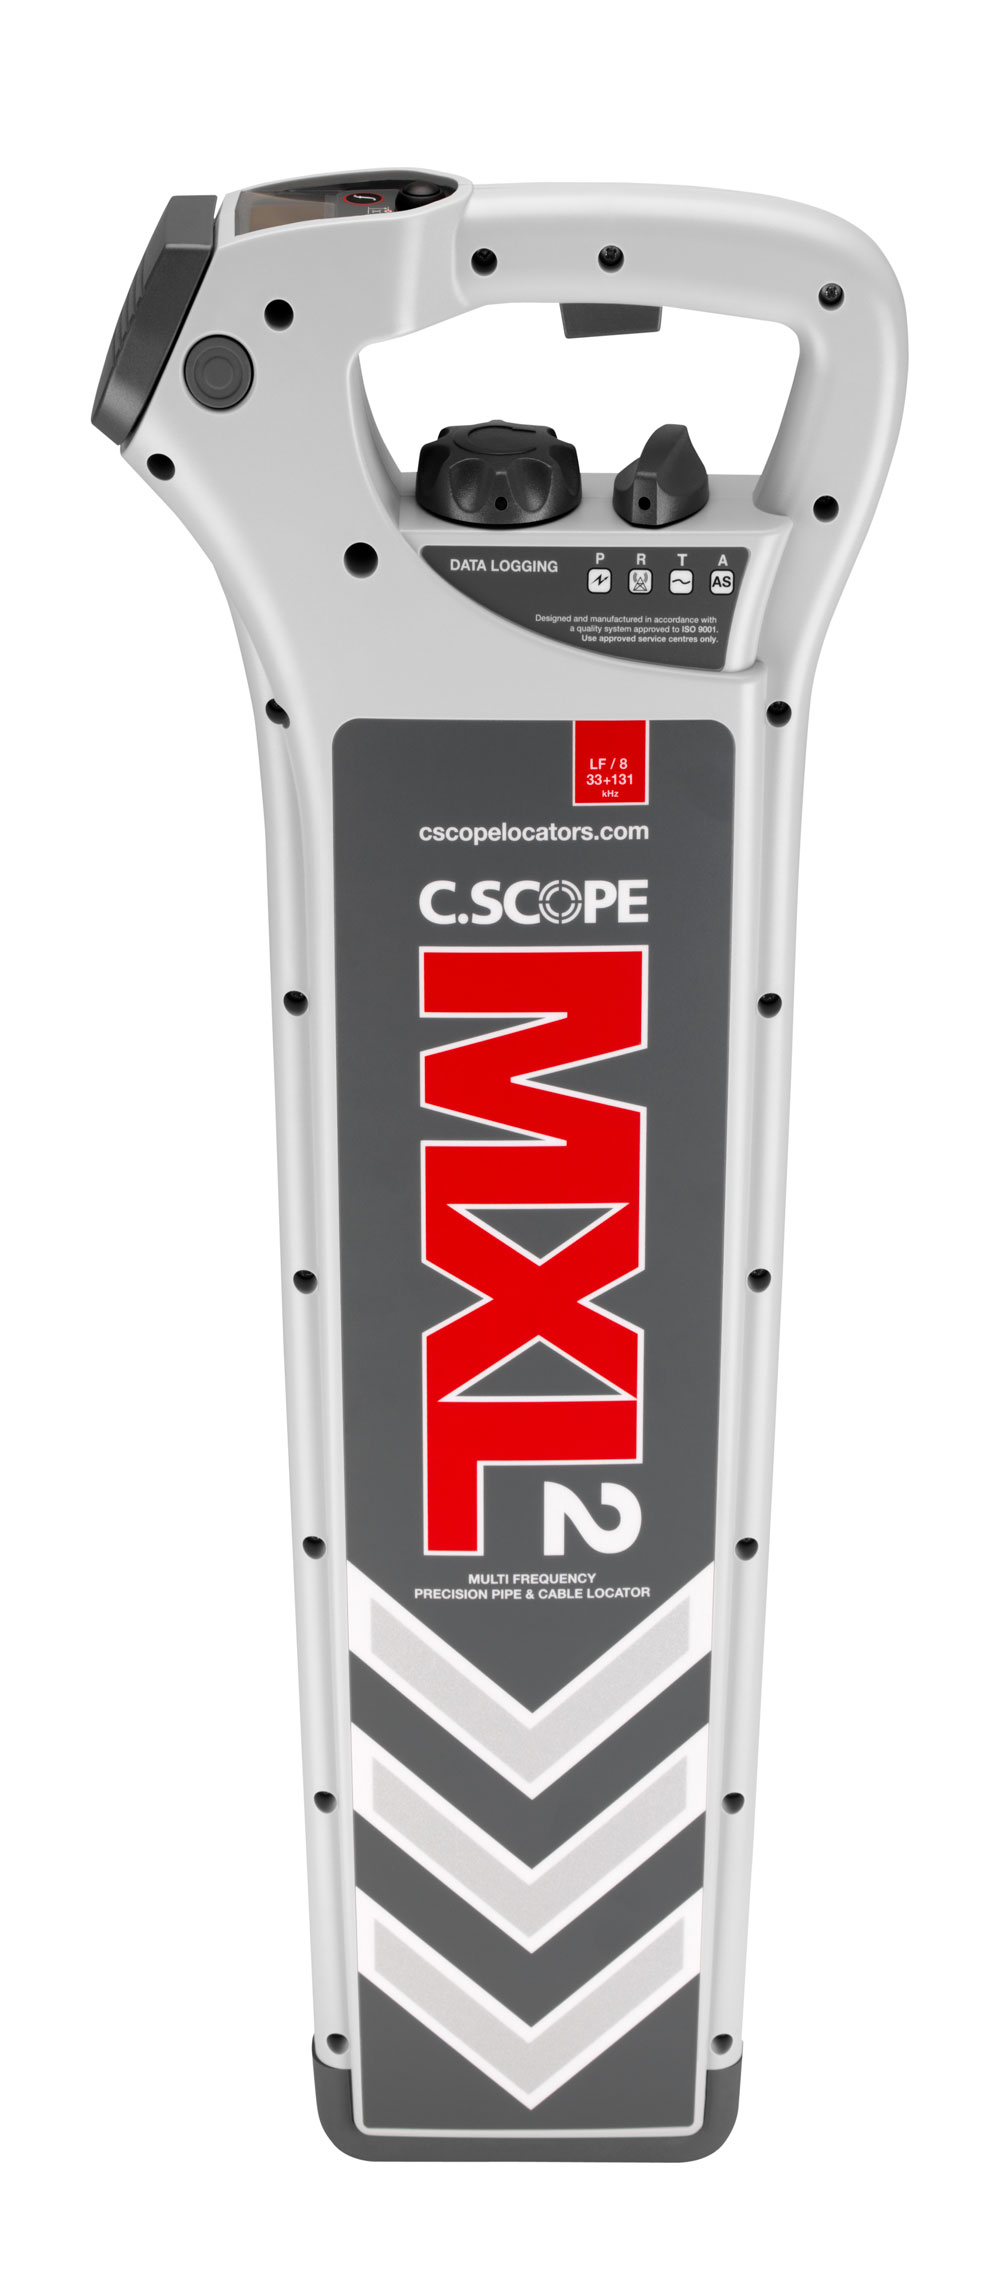 MXL anixneutes kalodiou c cscope